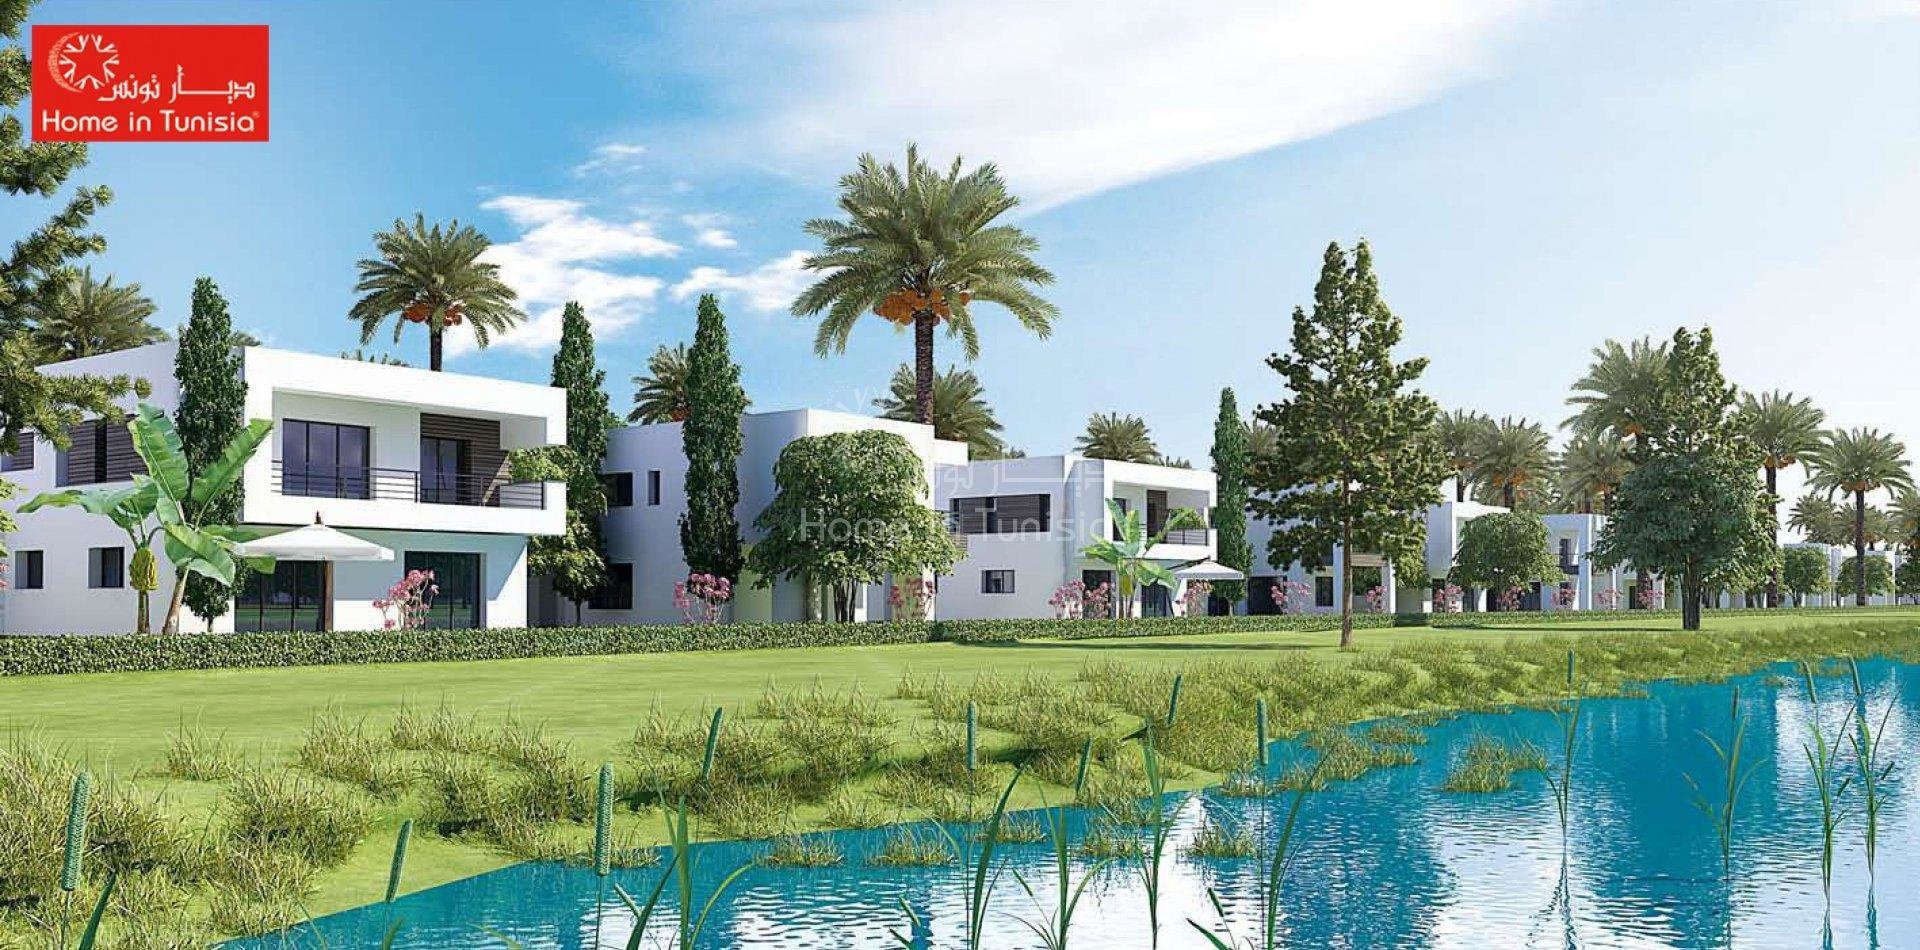 Villa golf isolée neuve superbe vue sur le golf plus de 367m2 avec 4 chambres terrasse jardin piscine